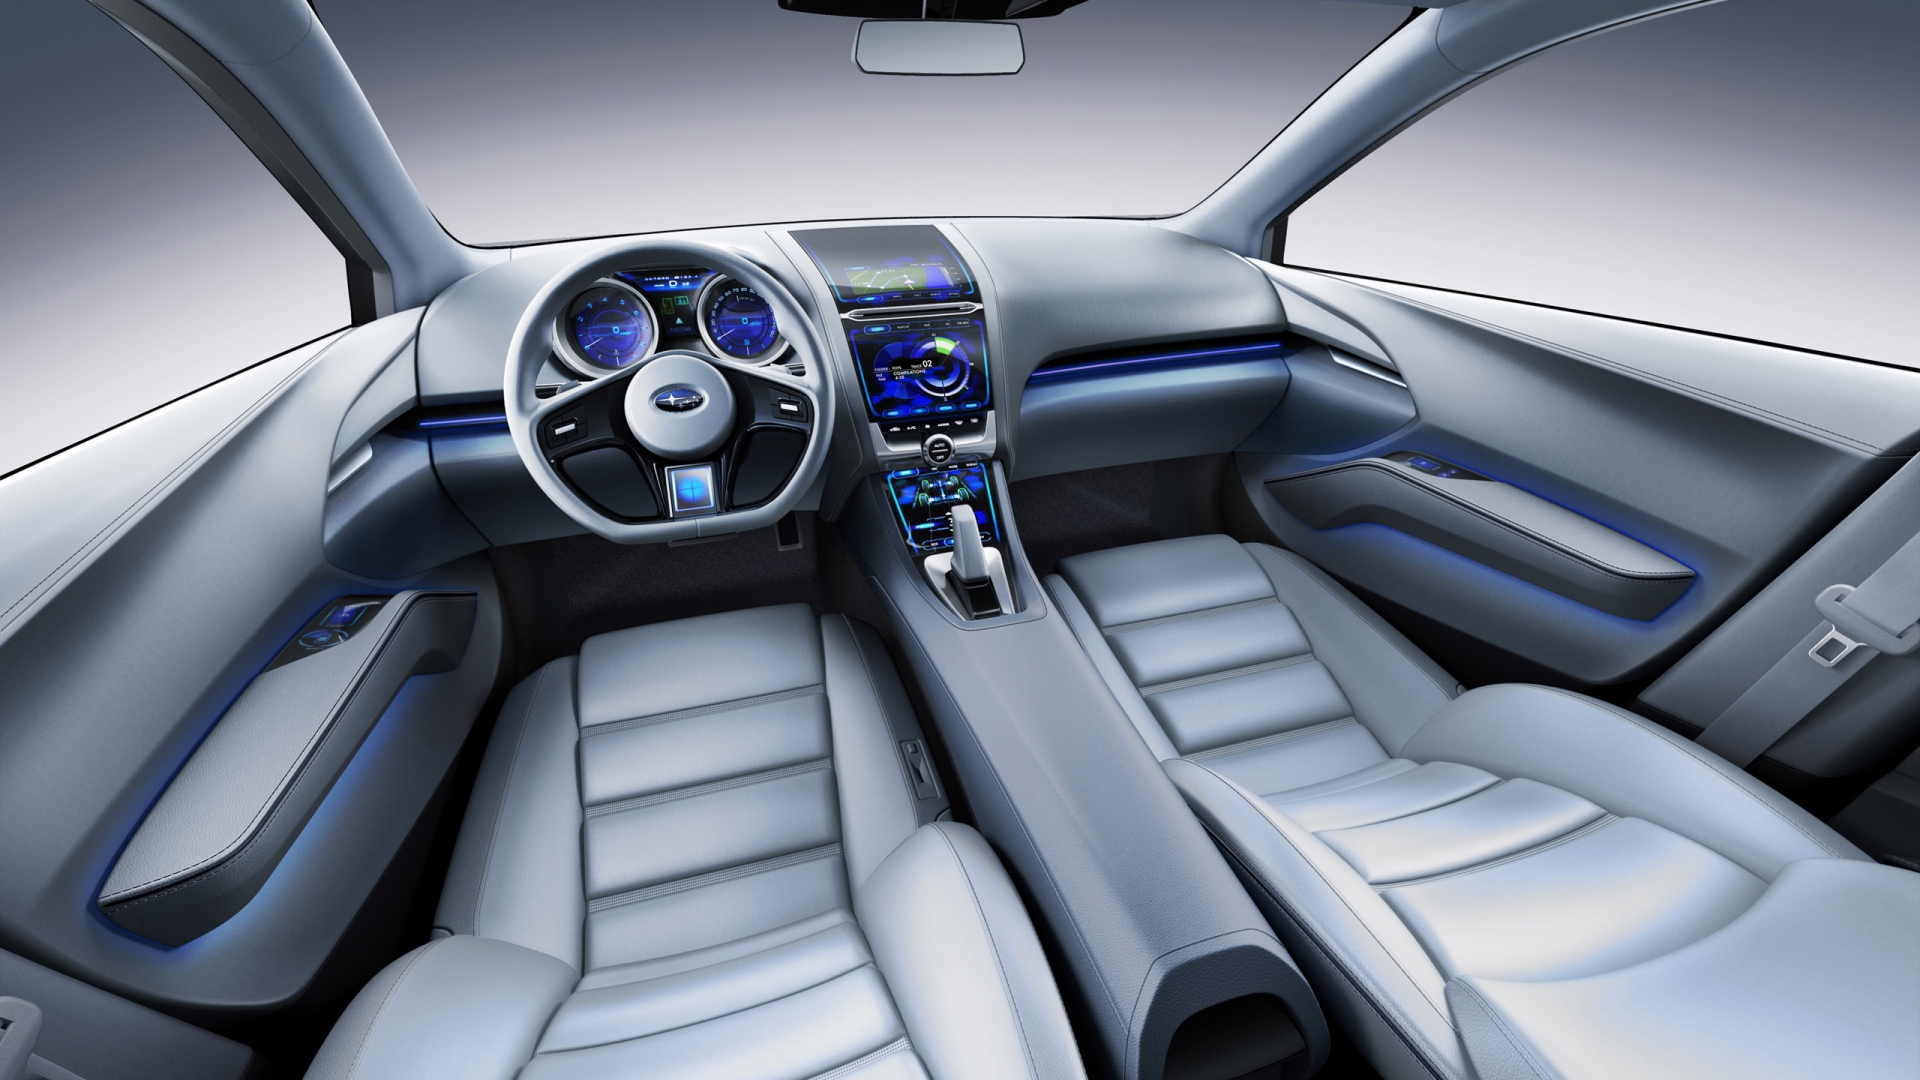 Subaru Impreza Concept Interior for 1920 x 1080 HDTV 1080p resolution